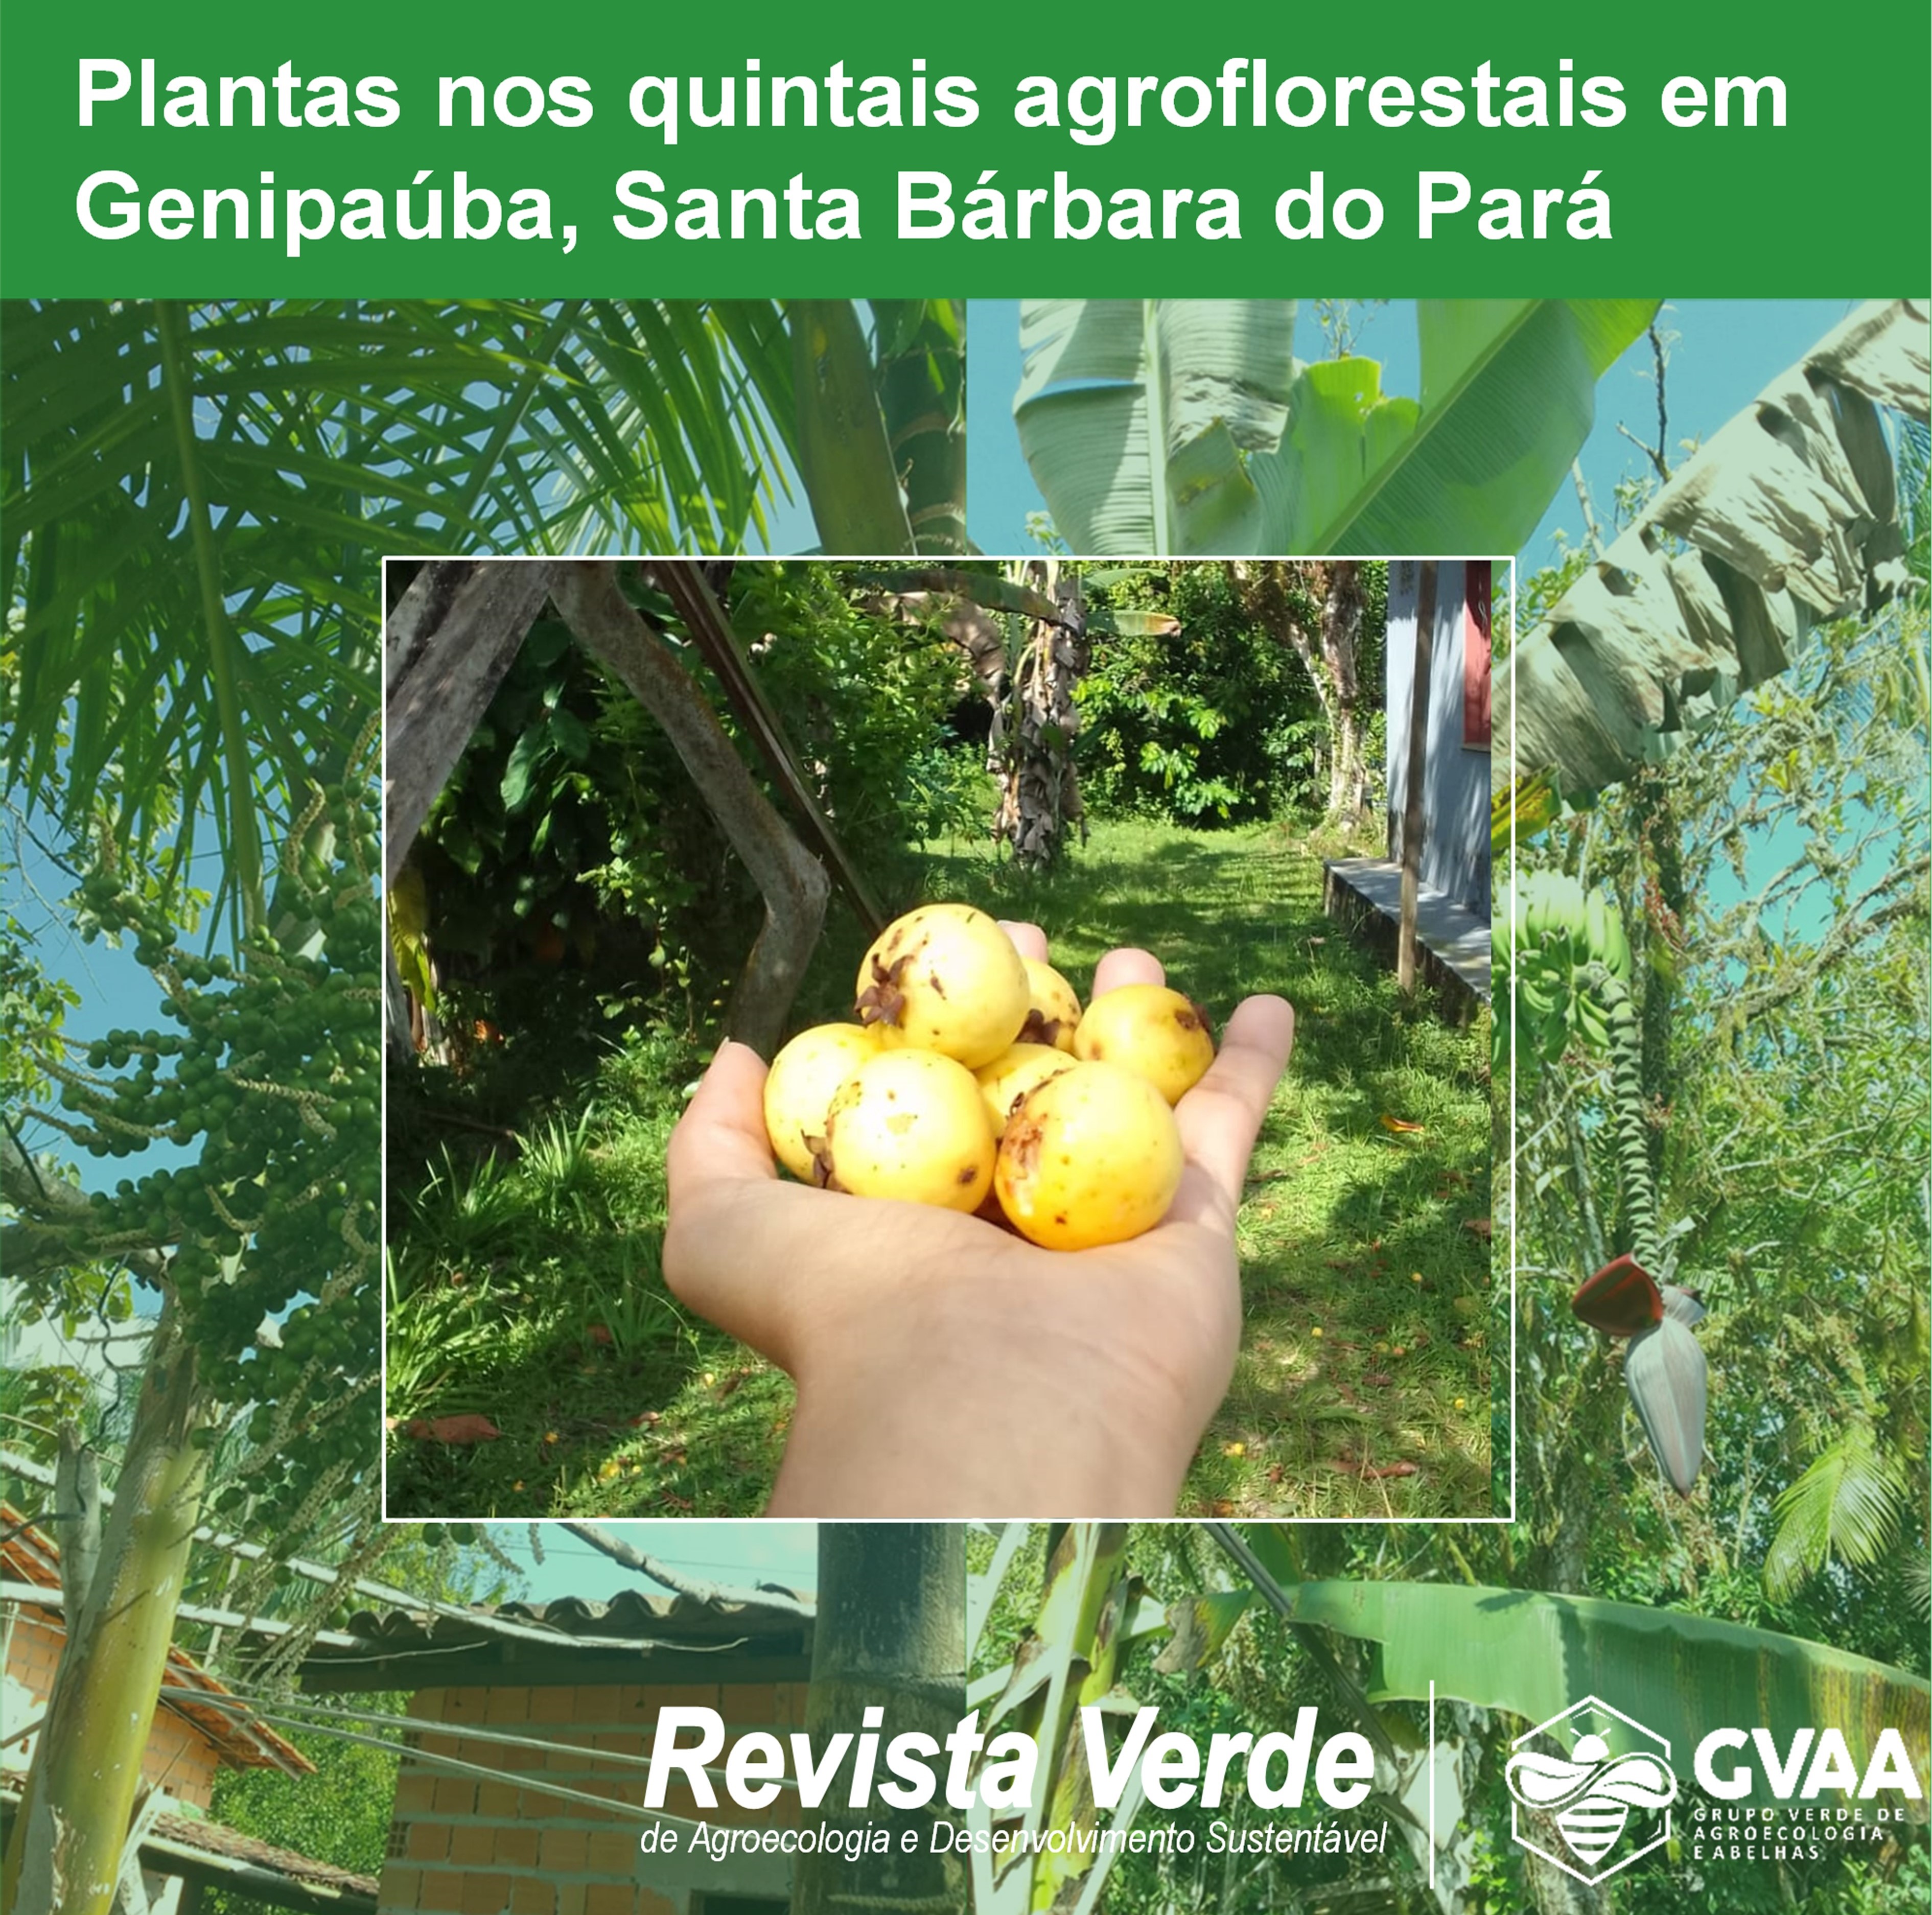 Composição e diversidade de plantas nos quintais agroflorestais da comunidade de Genipaúba, Santa Bárbara do Pará